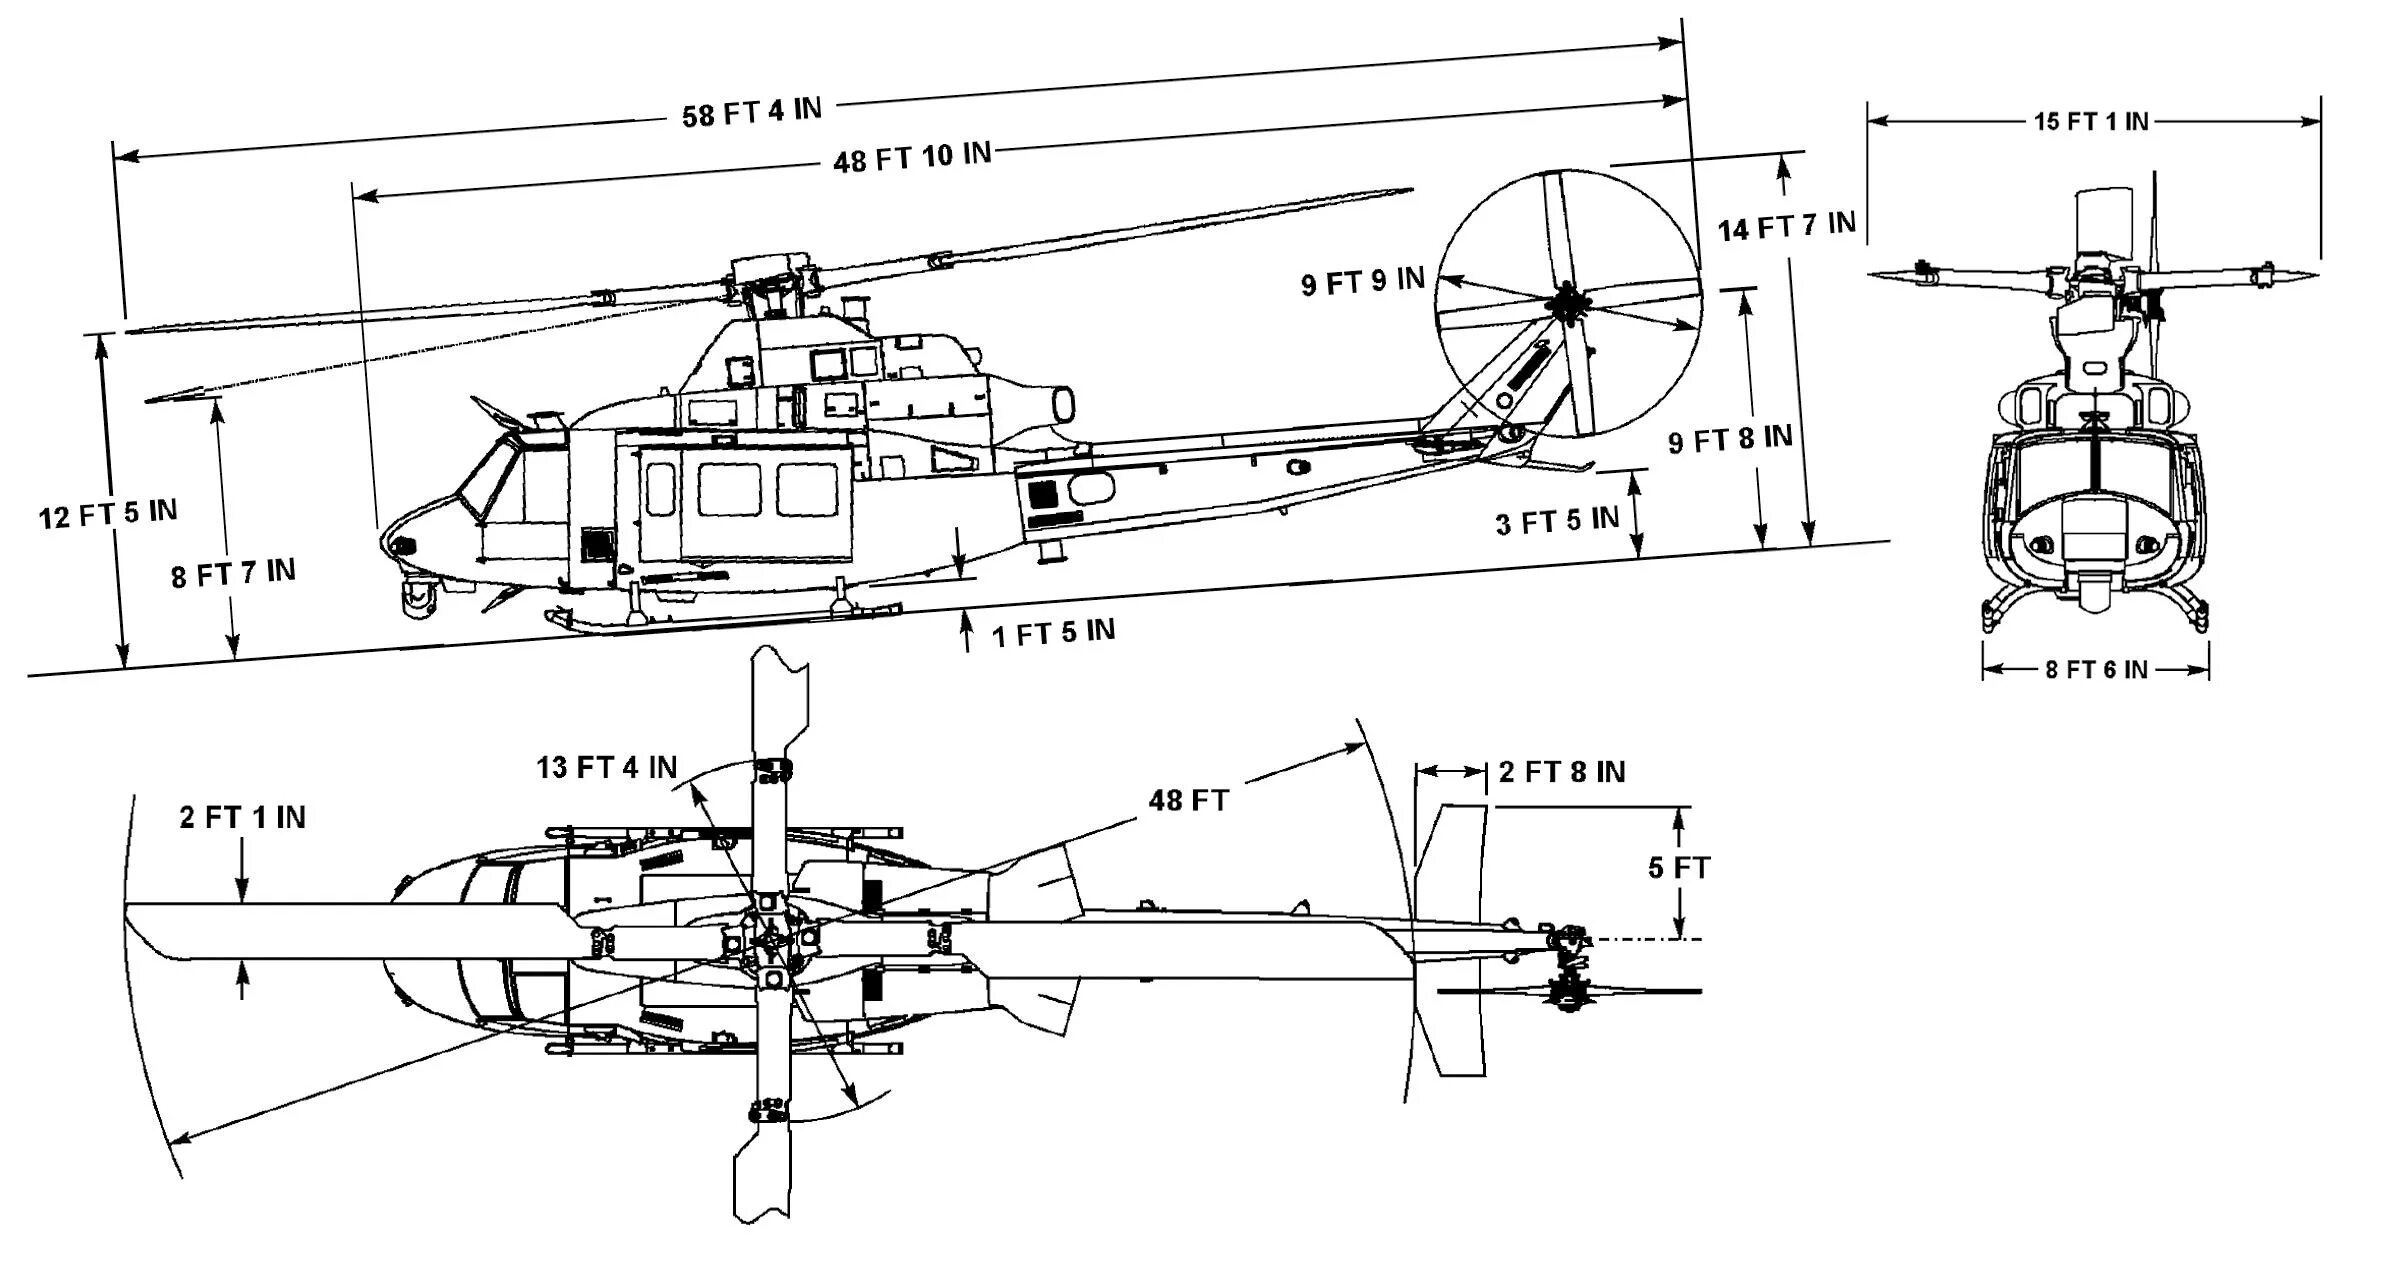 Uh 1 вертолет чертеж. Вертолет ирокез uh-1 чертежи. Bell uh-1 Iroquois чертеж. Чертёж вертолёта uh 1d. Какие детали есть у вертолета